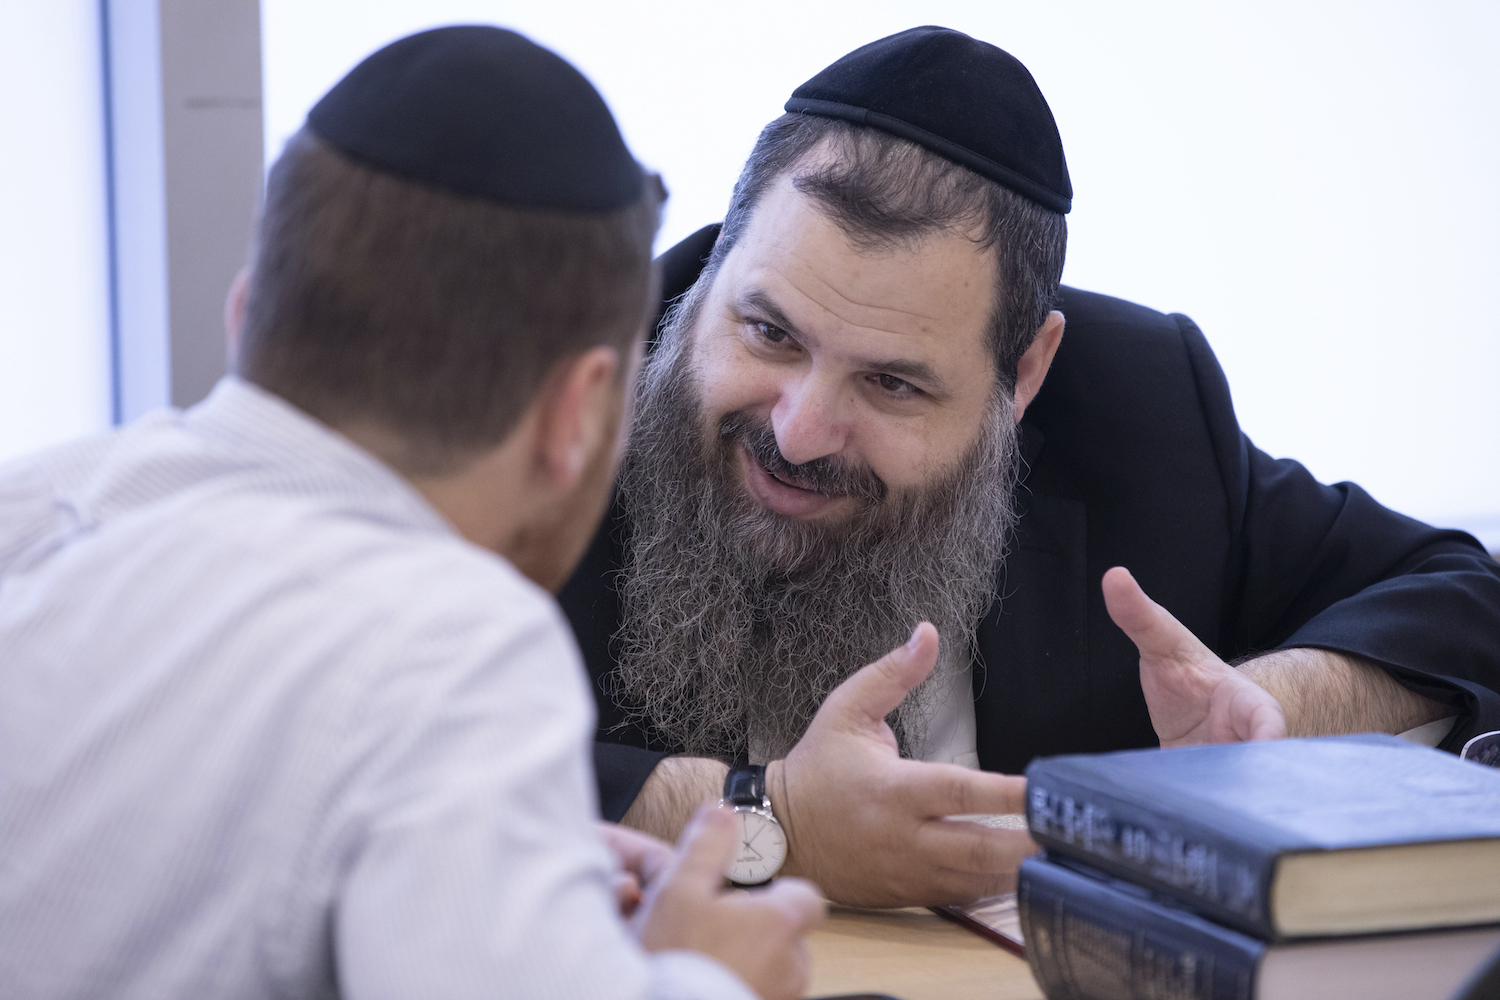 Rabbi Yosef Sonnenschein